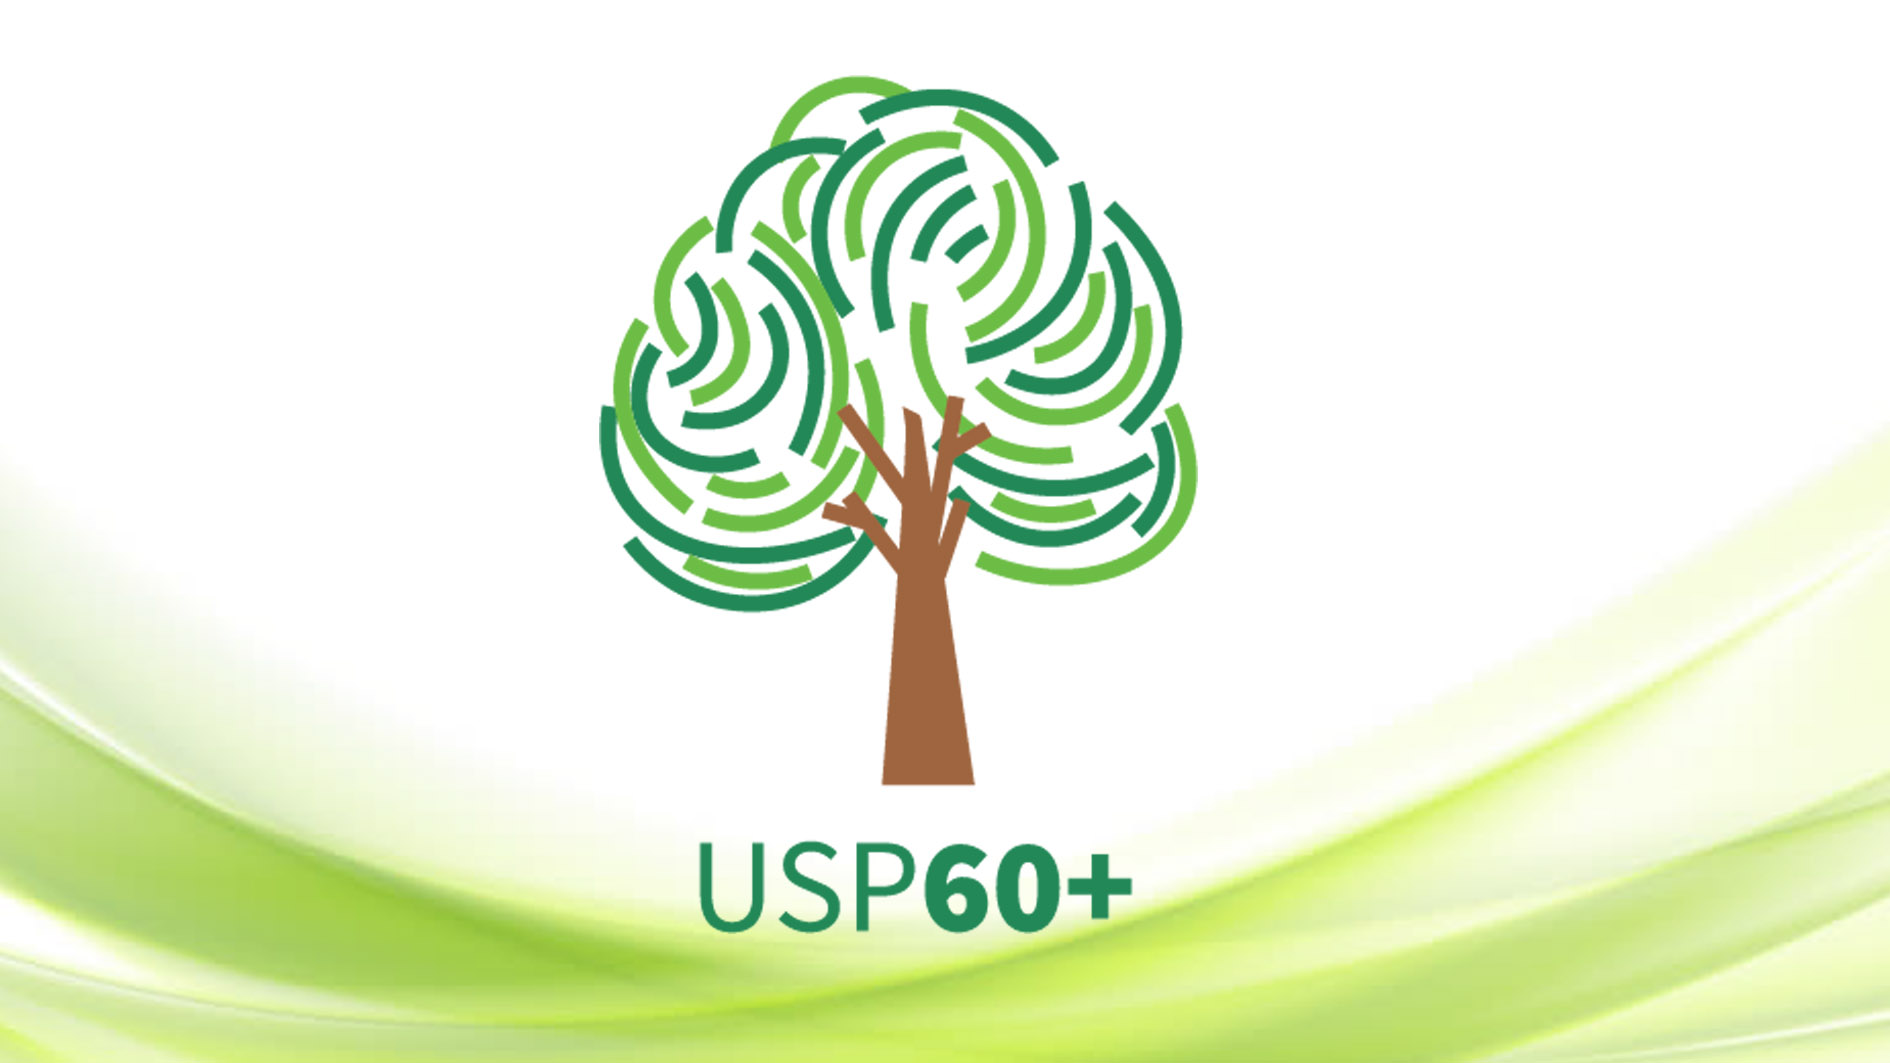 USP adota nova terminologia para o público 60+